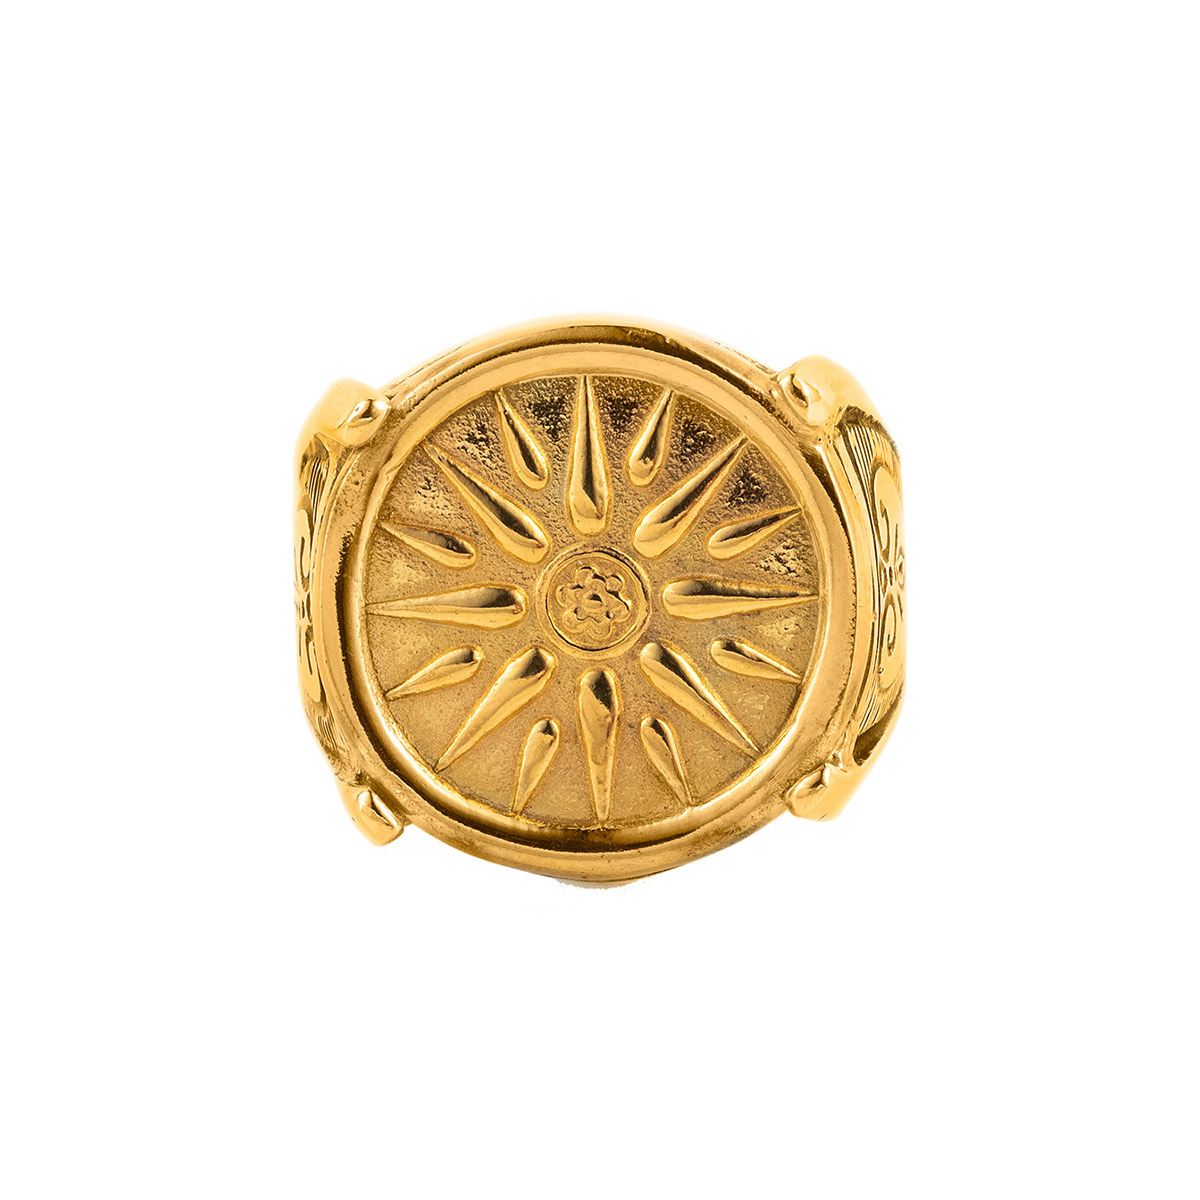 Δαχτυλίδι με τον Ήλιο της Βεργίνας - Ασήμι και επιχρυσωμένo - GREEK ROOTS